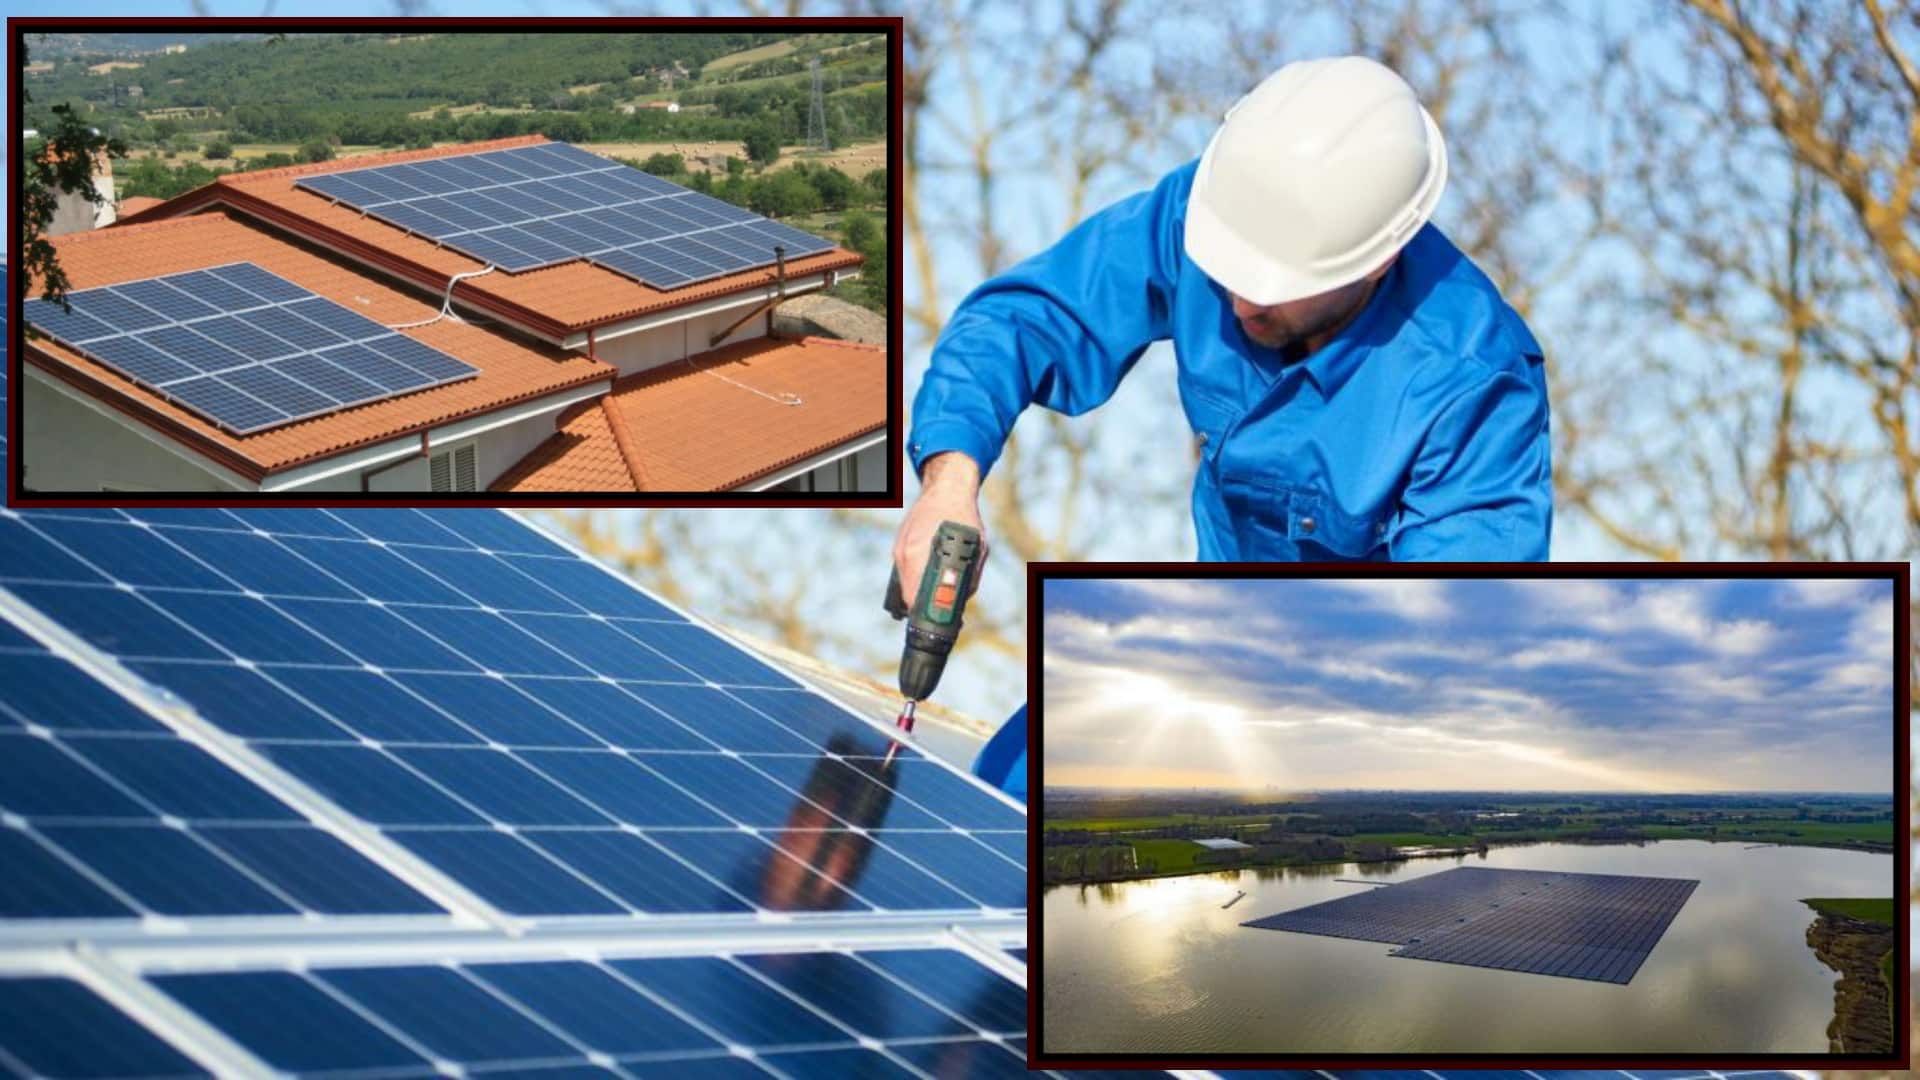 Decreto energia: pannelli solari sui tetti anche senza autorizzazione, basterà il modulo di inizio e fine lavori